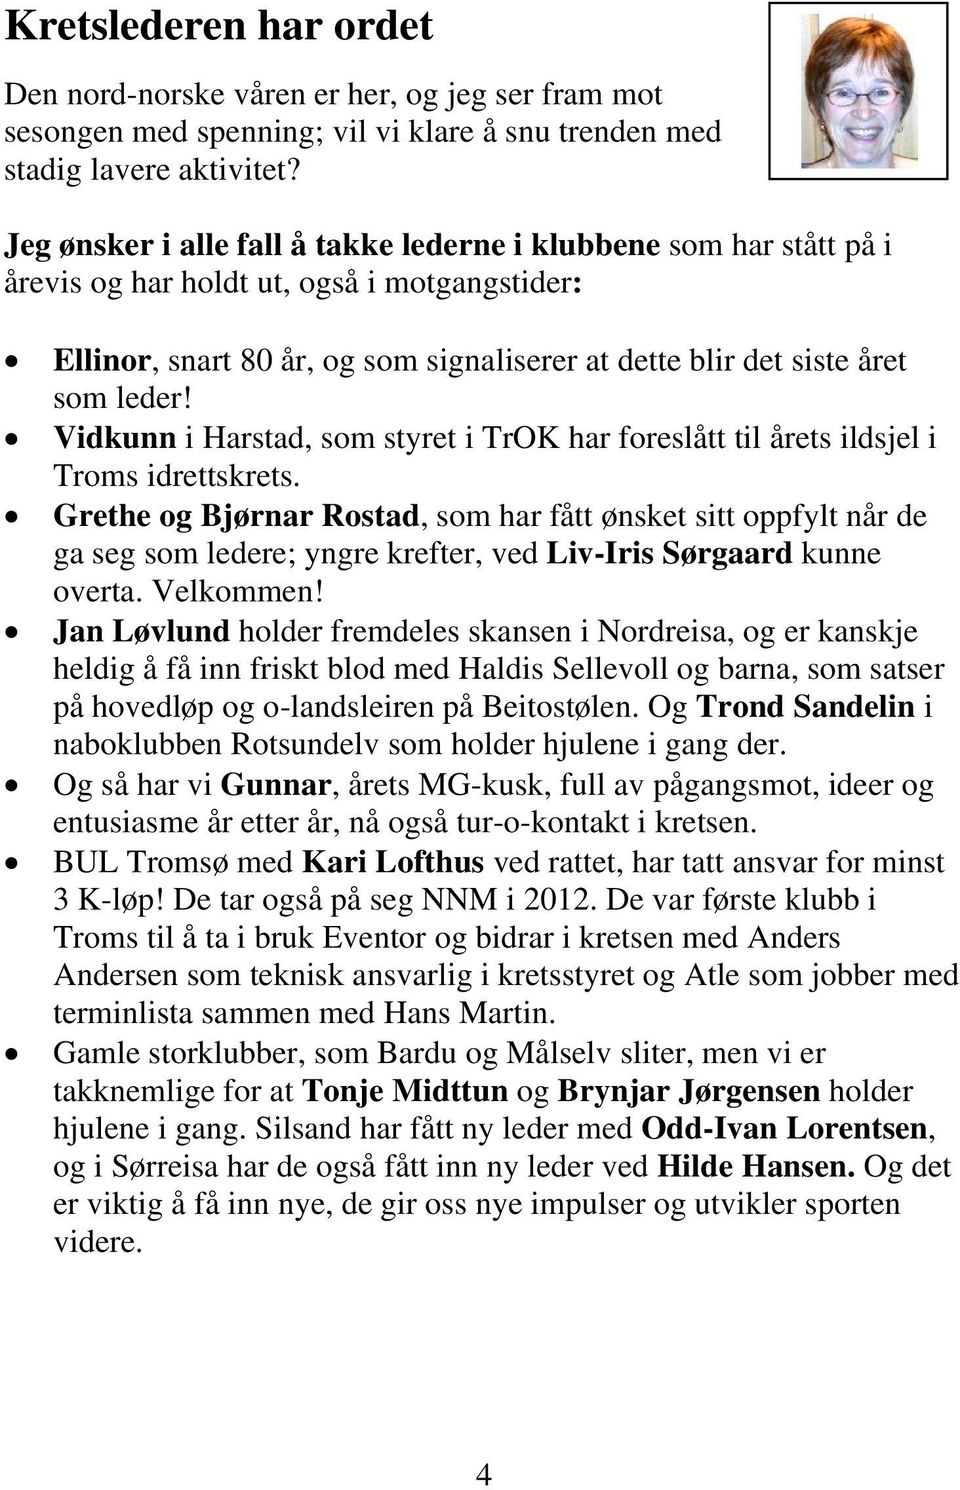 Vidkunn i Harstad, som styret i TrOK har foreslått til årets ildsjel i Troms idrettskrets.